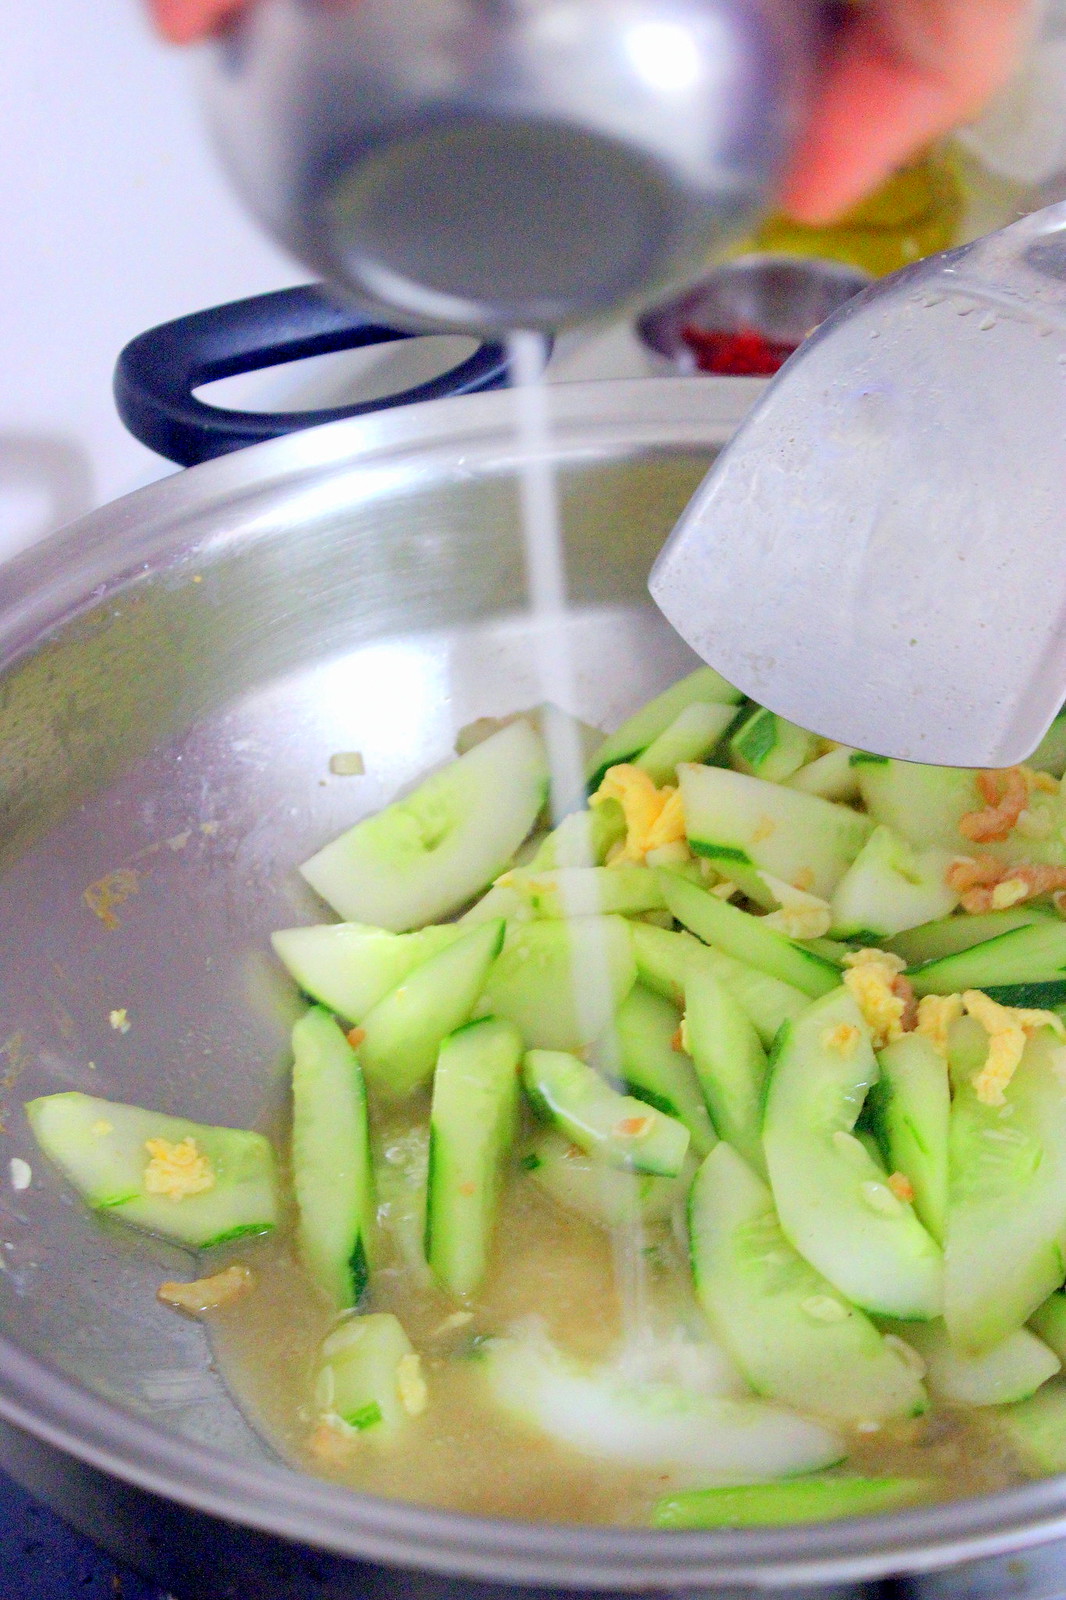 Grandma's Cucumber Stir Fry Recipe